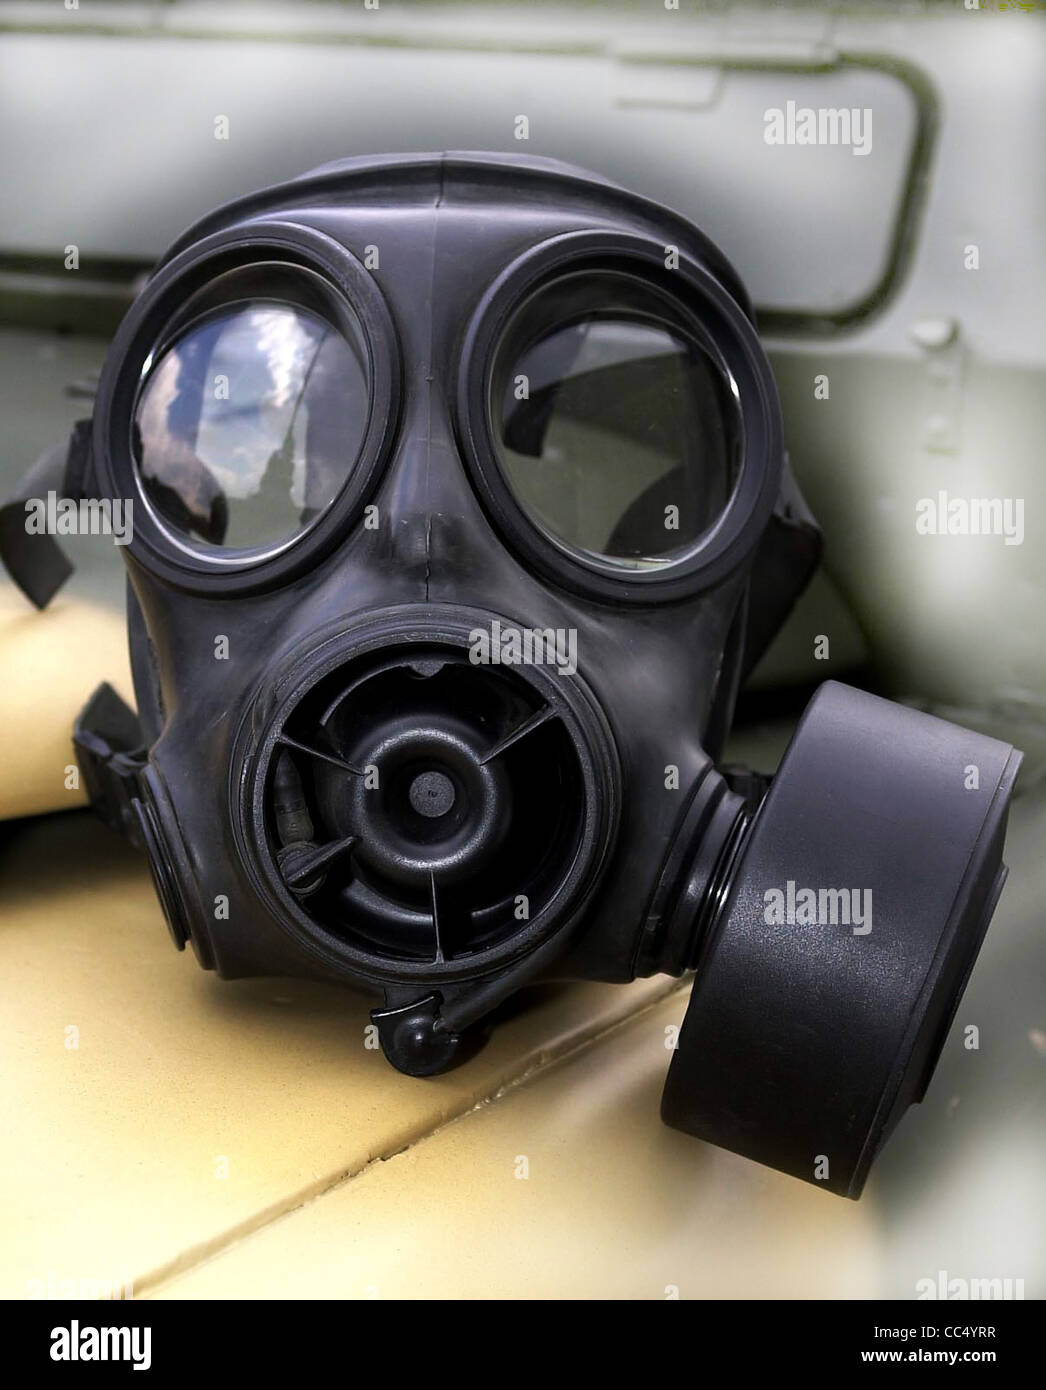 Atemschutzmasken - Gasmasken - militärische Gebrauchtmaschinen. Dies ist  eine britische Armee S10-Maske Stockfotografie - Alamy